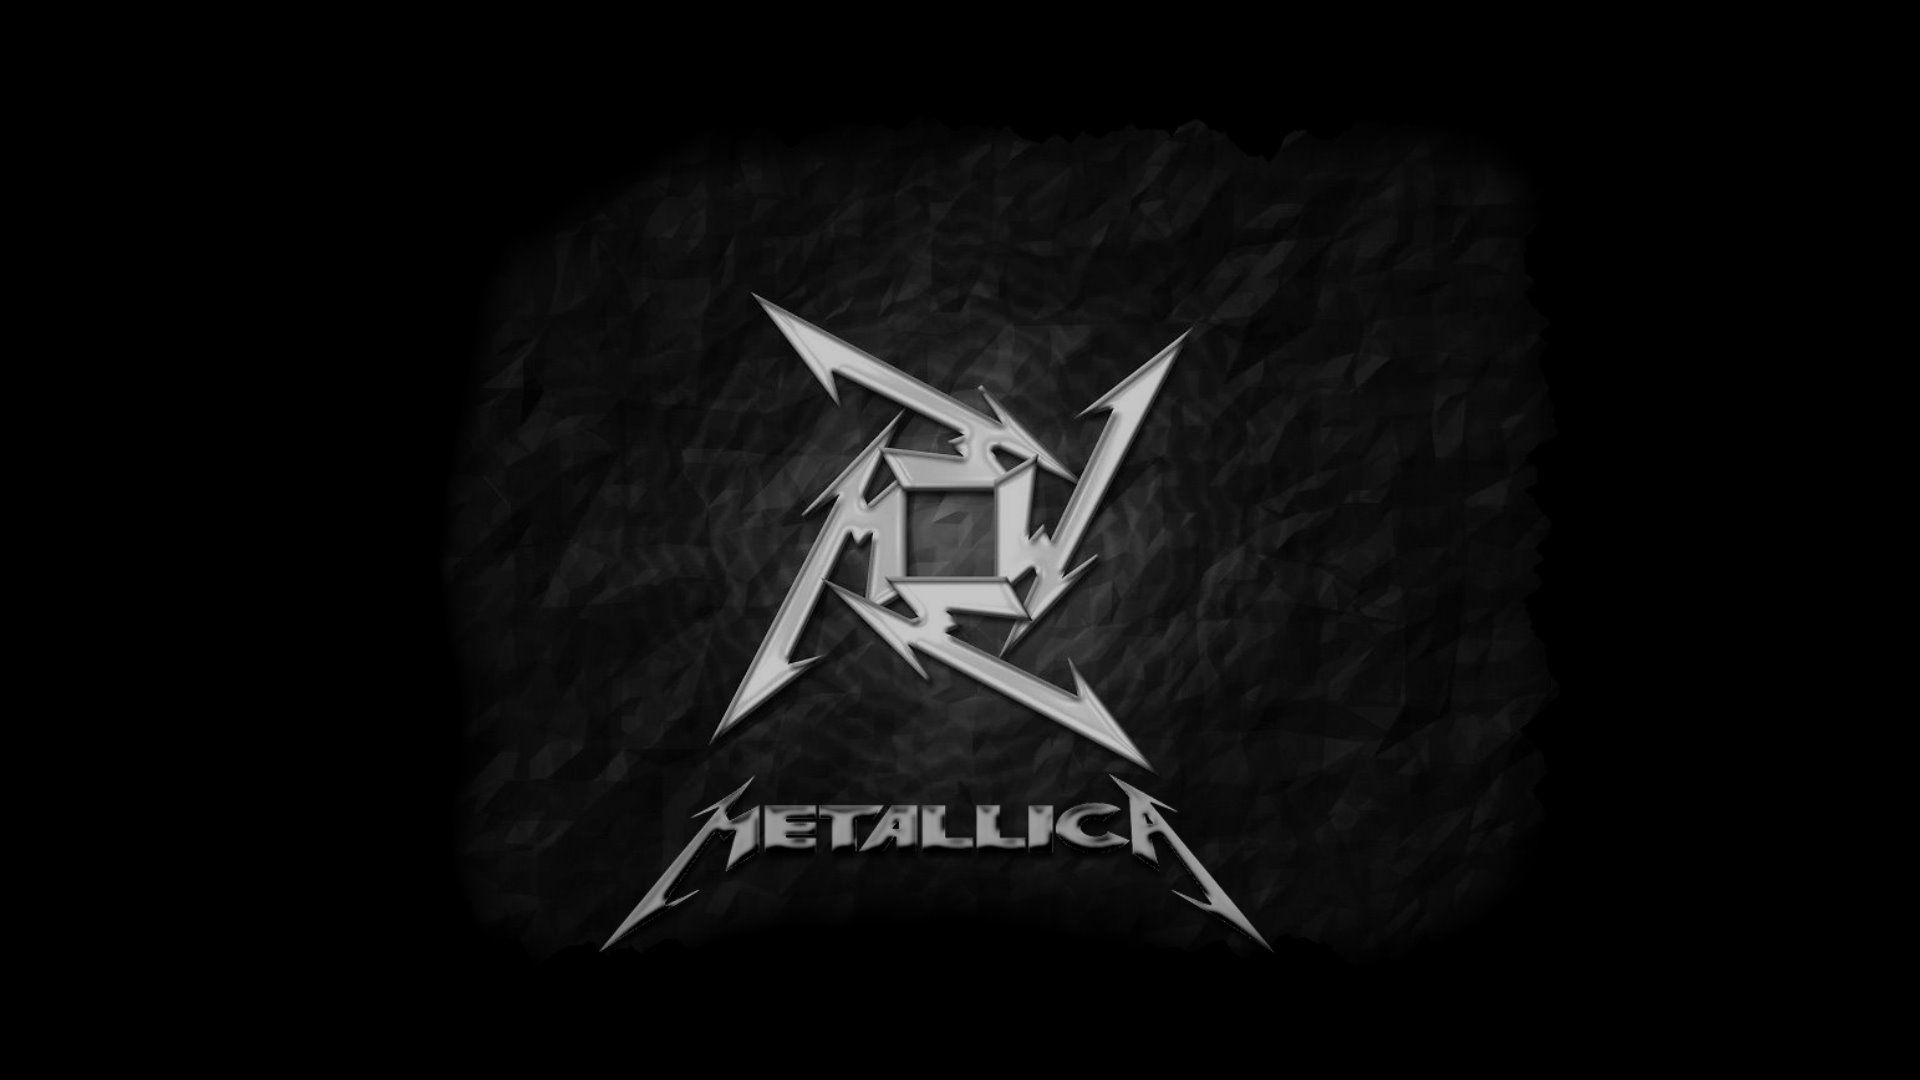 Metallica Wallpaper Widescreen HD 1080p Widescreen With Photos Of ...